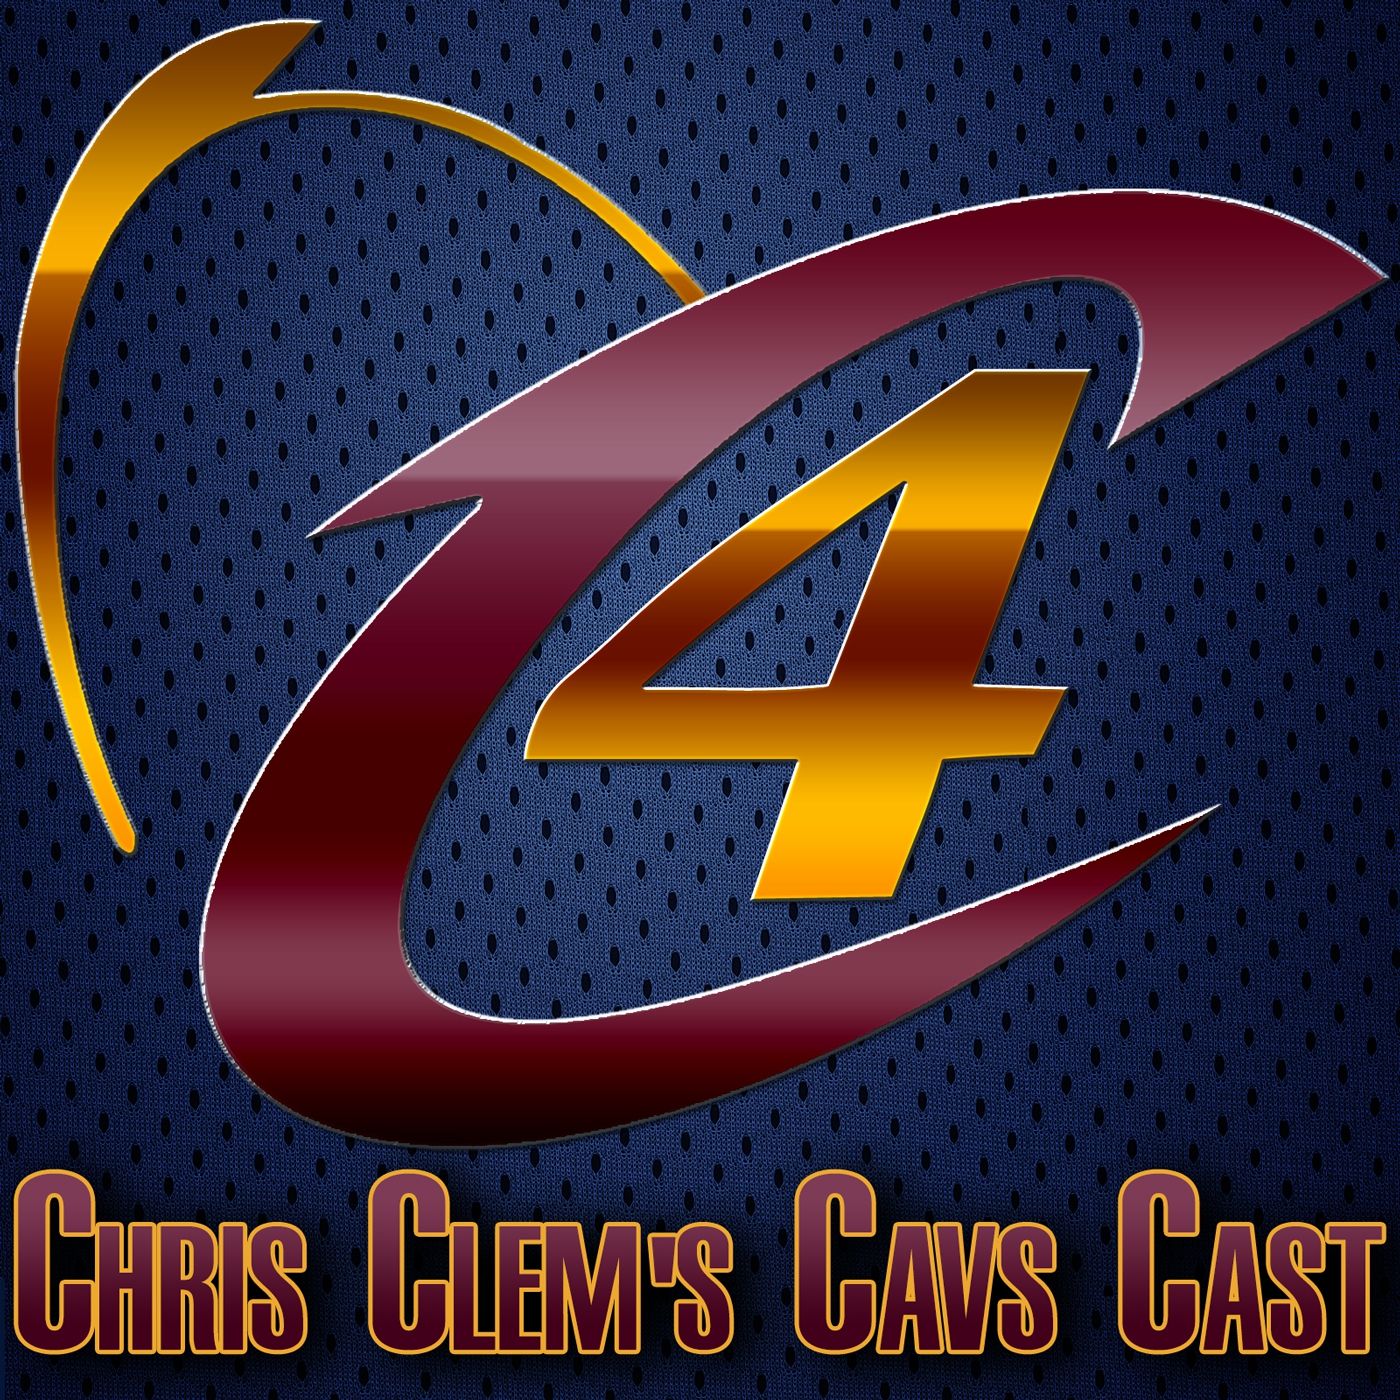 S1 Ep1: Chris Clem’s Cavs Cast #1 - 2/9/15